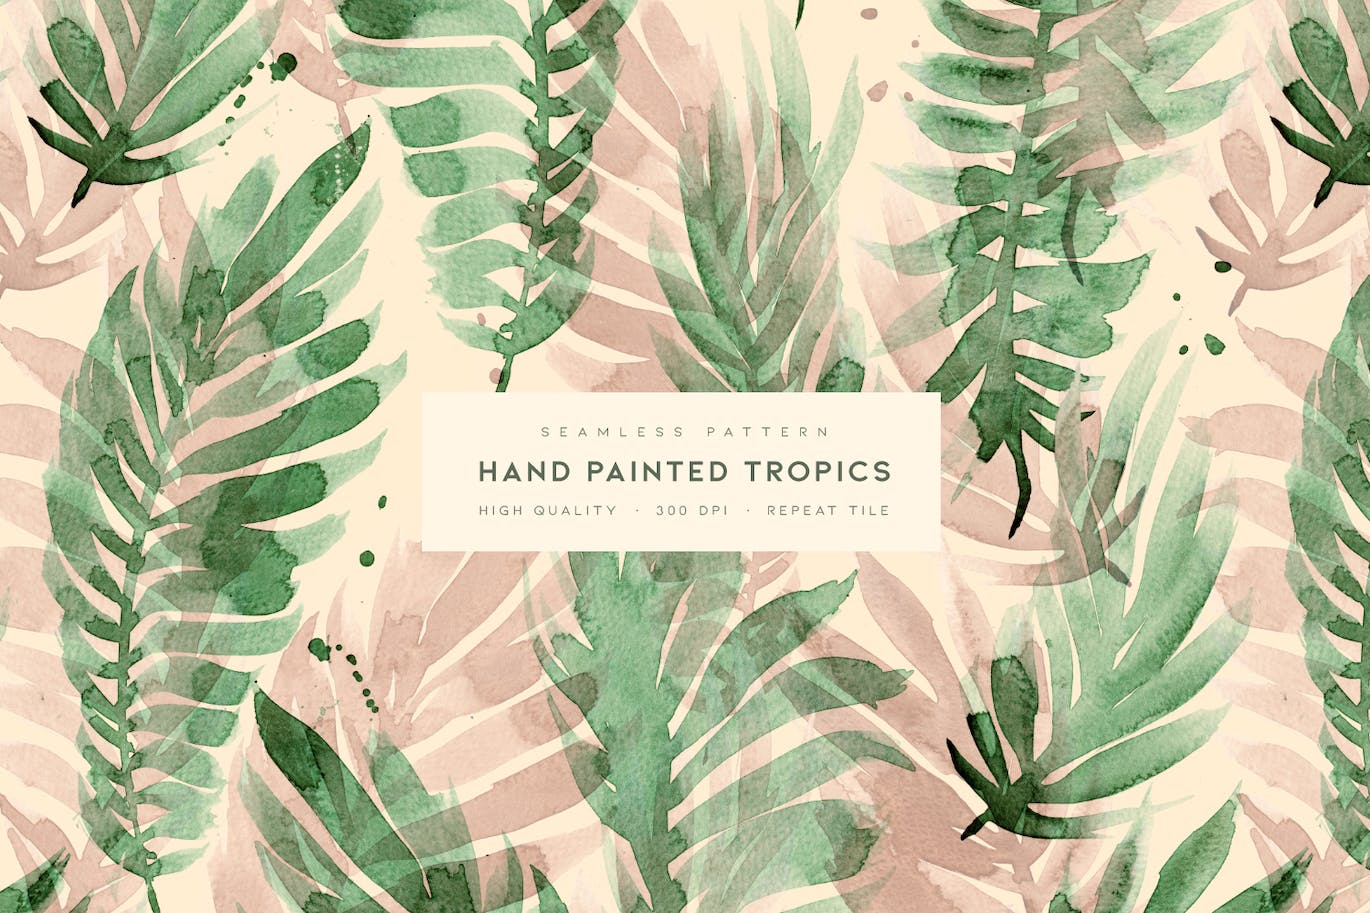 手绘热带绿叶图案素材 Hand Painted Tropics 图片素材 第1张